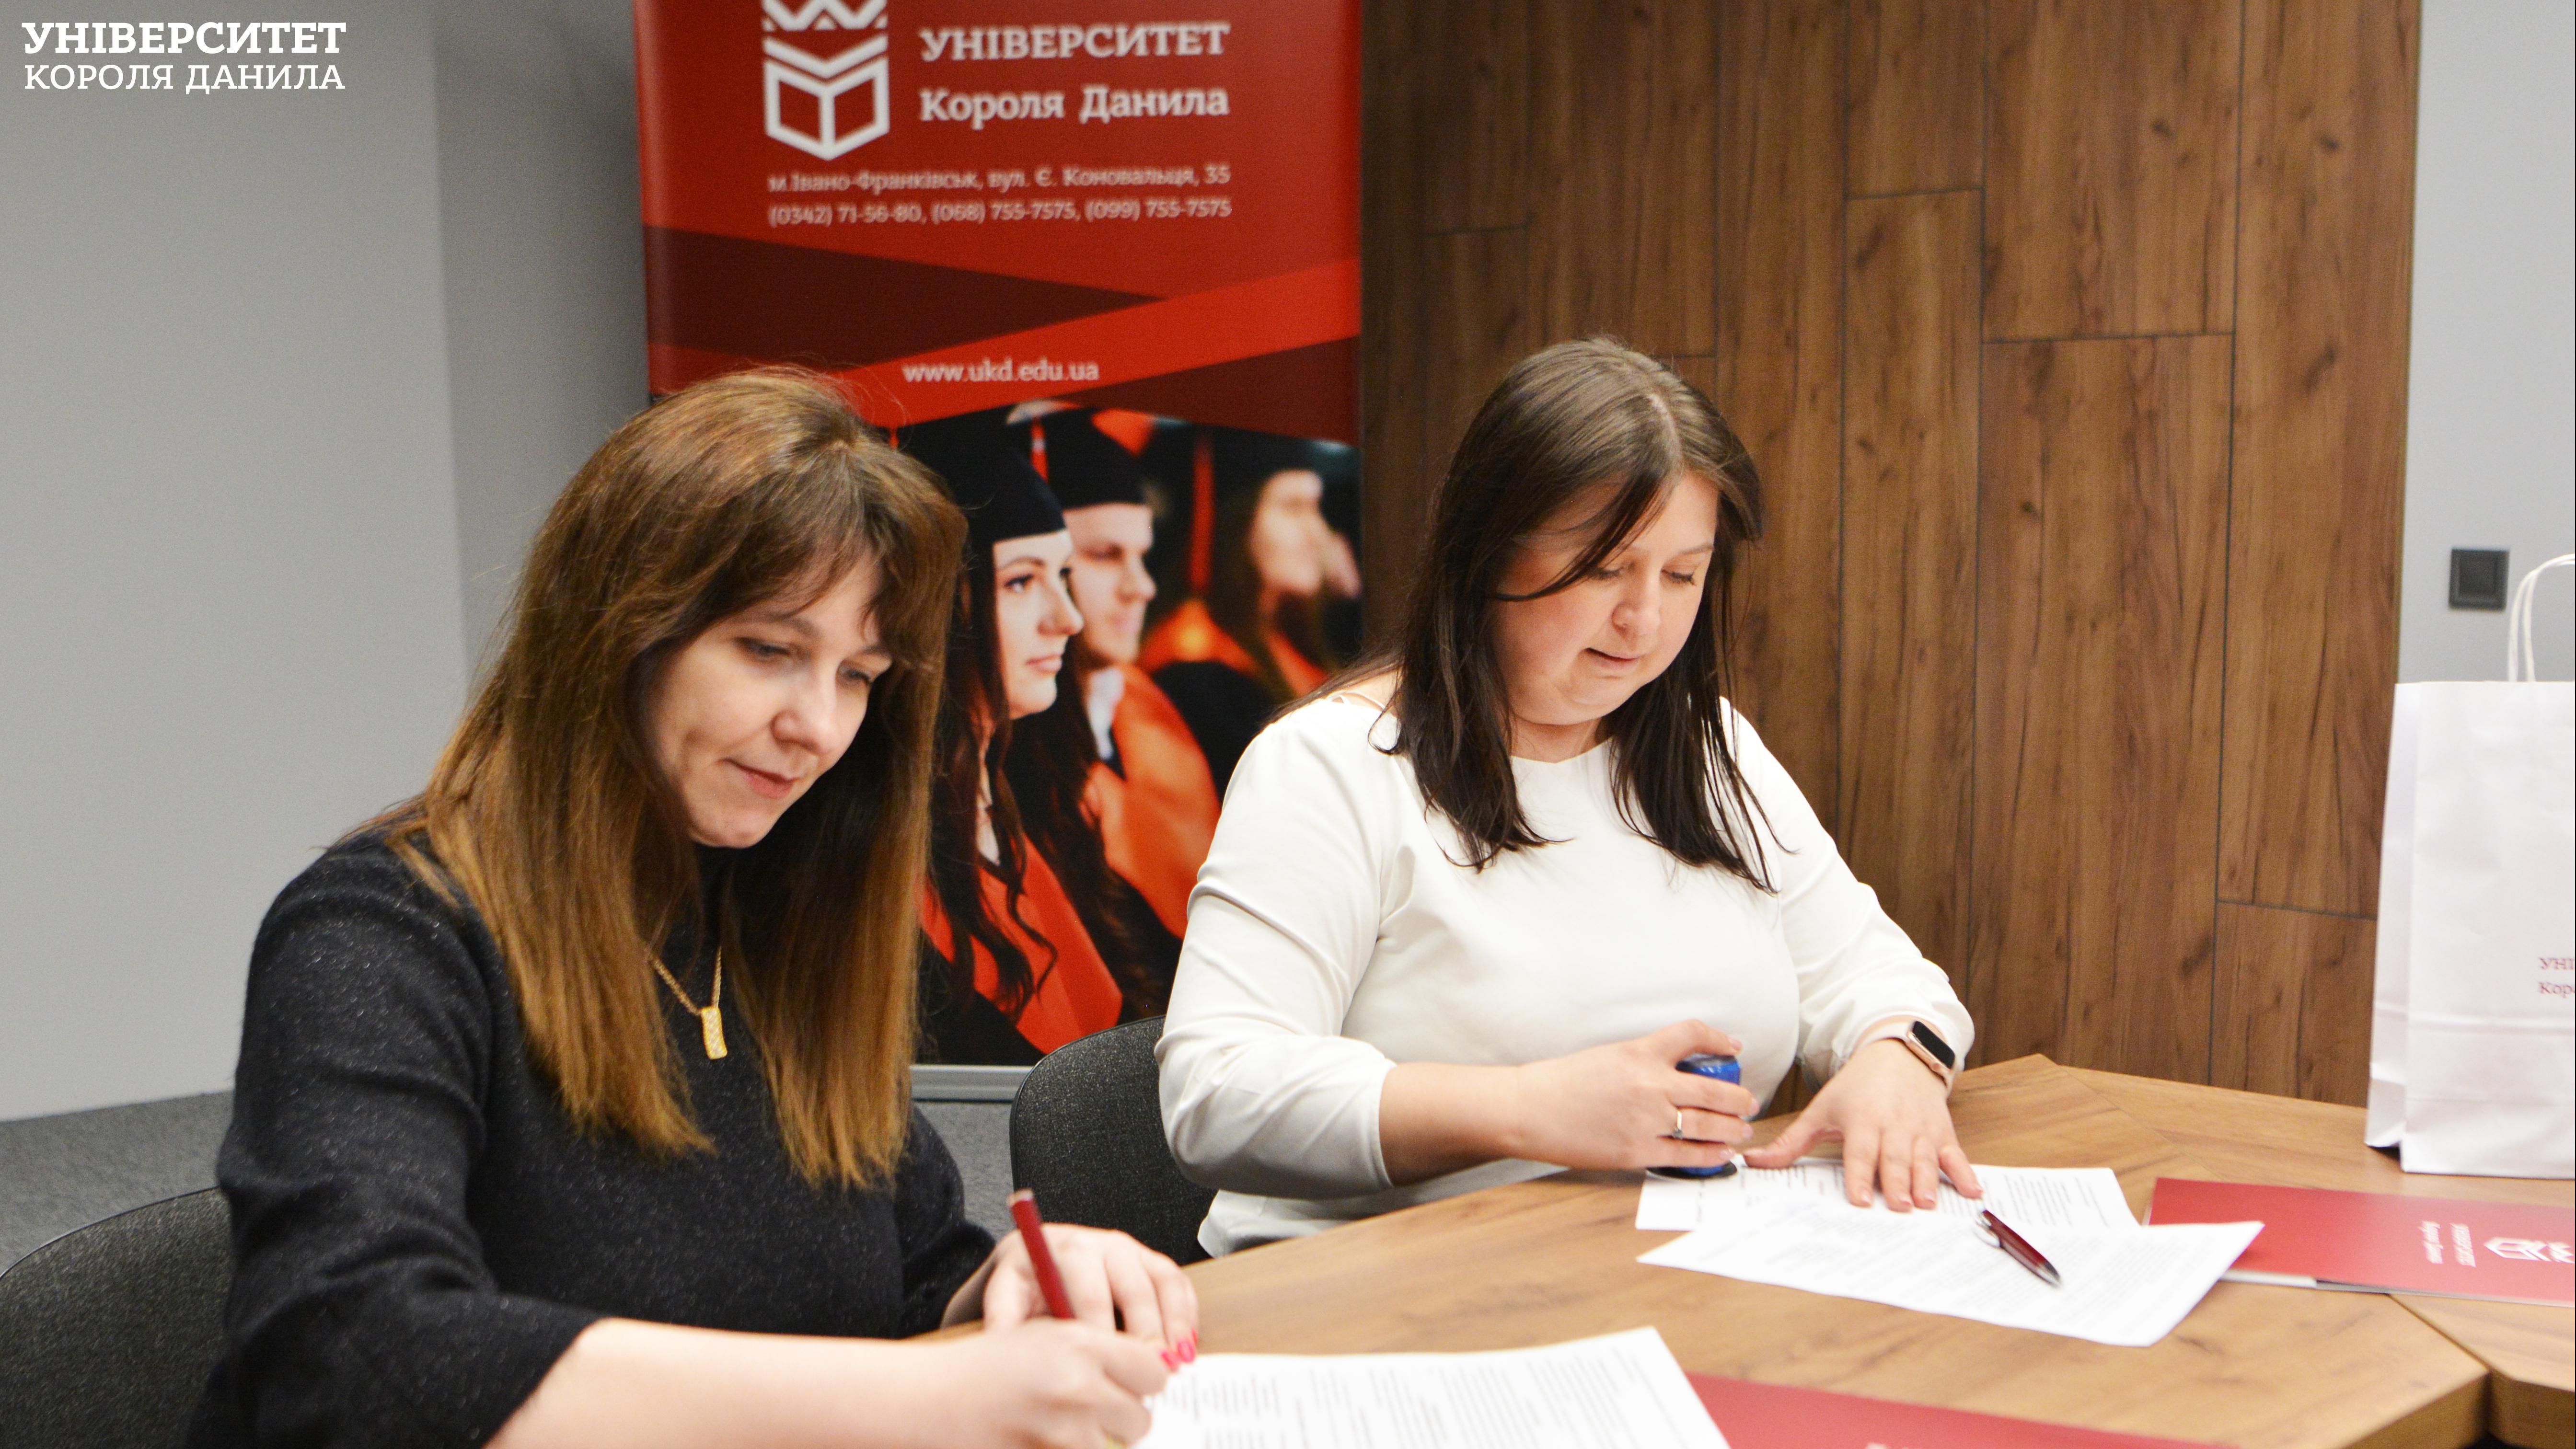 Університет Короля Данила уклав договір про співпрацю з ТзОВ «Центр управлінських рішень».